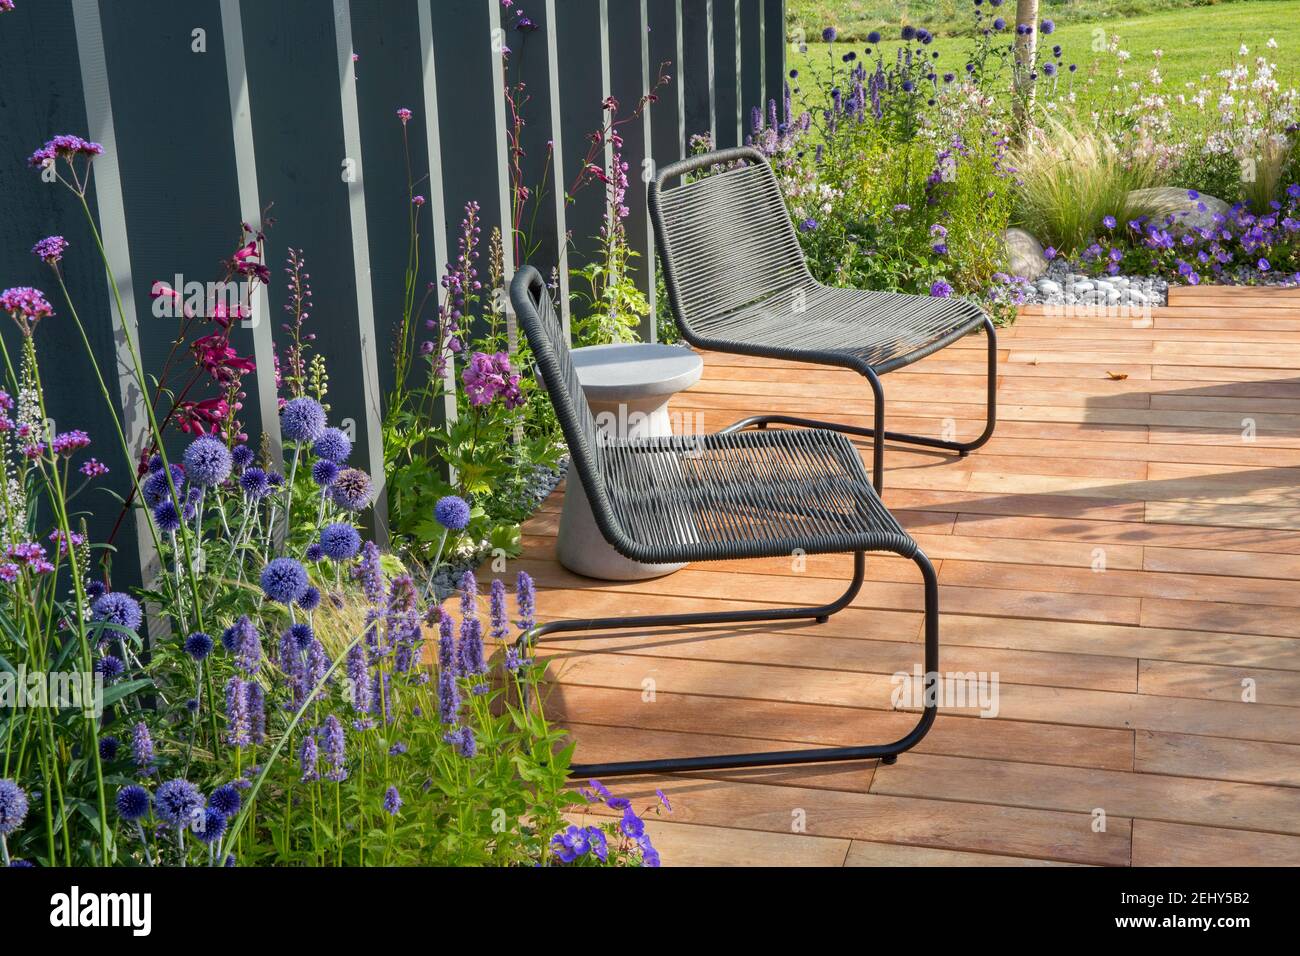 Sedie in metallo nero su terrazza in legno con giardino Pannelli di recinzione impianto di Echinops - Verbena bonariensis Agastache e. Perovskia Inghilterra Regno Unito Foto Stock